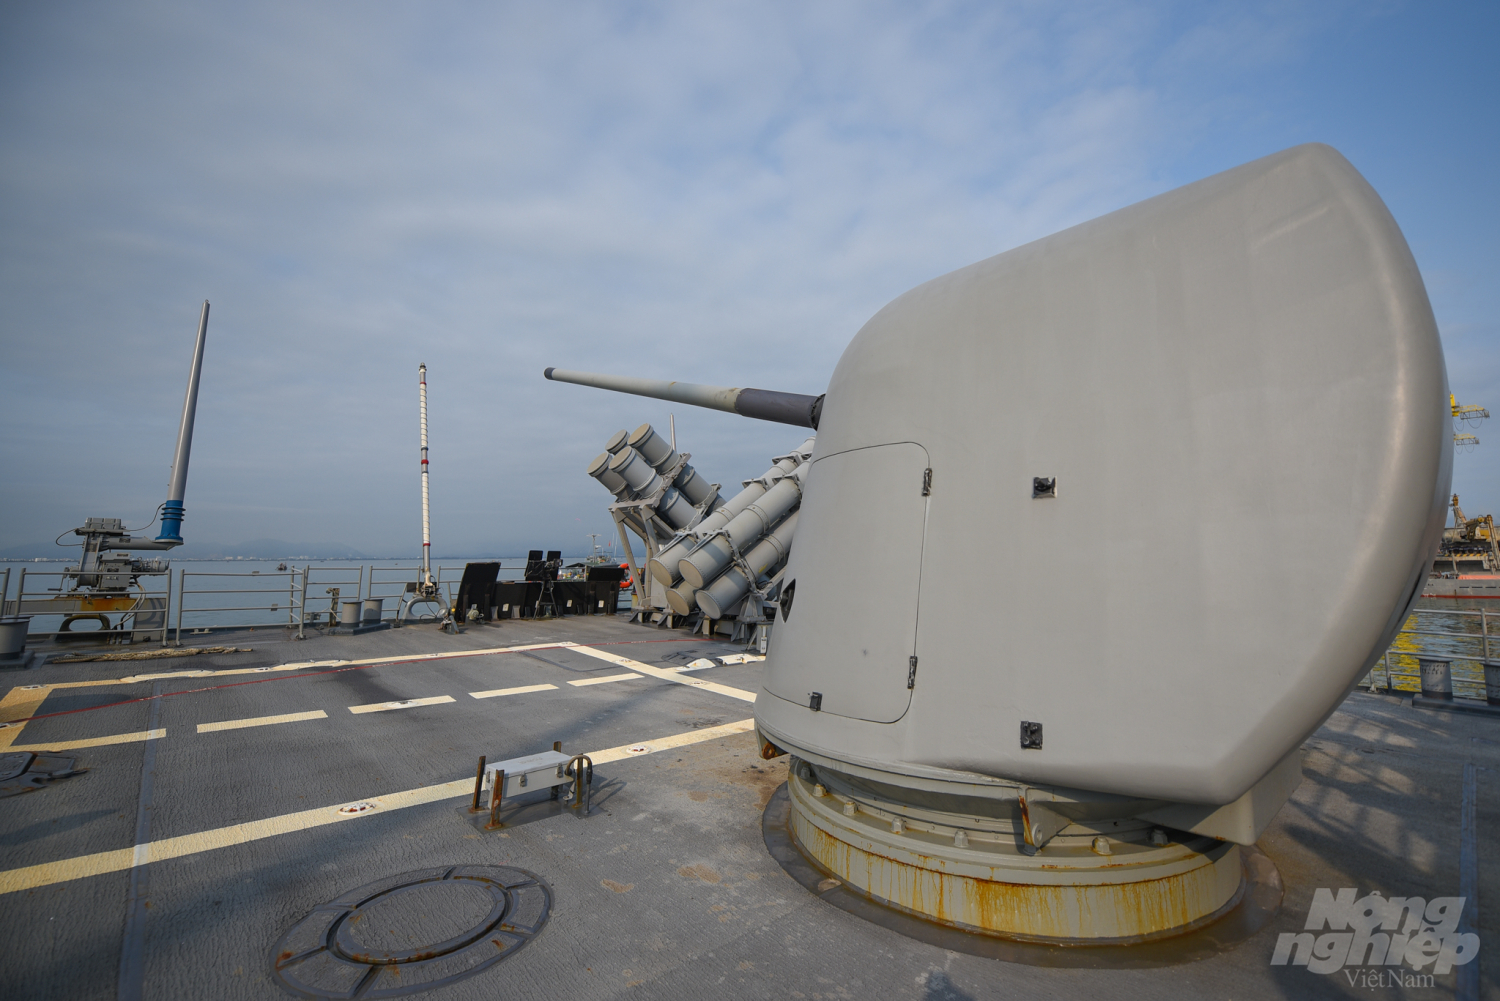 Cận cảnh pháo 127 mm ở đuôi tàu. Tuần dương hạm Bunker Hill được lắp 2 pháo 127 mm, một ở mũi tàu và một ở đuôi tàu. Ảnh: Tùng Đinh.